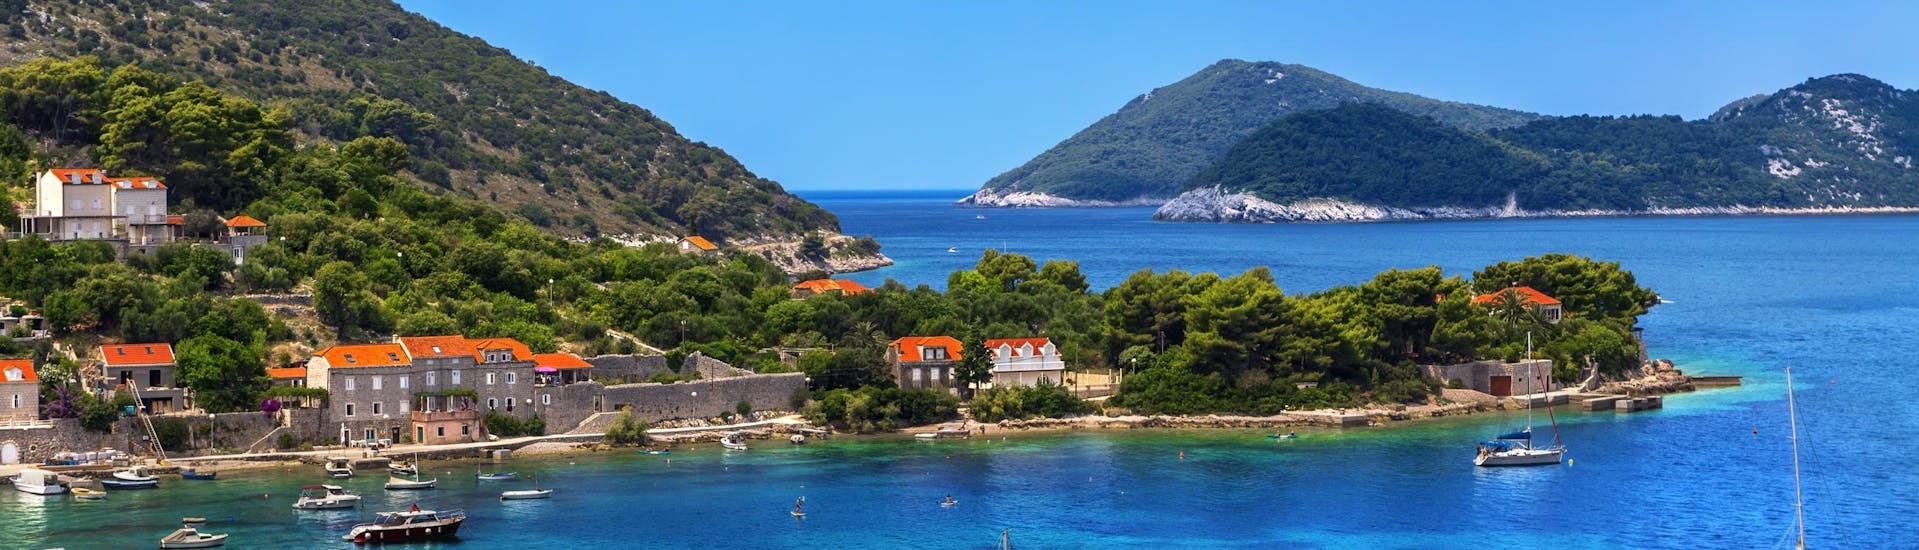 Foto van het eiland Kolocep, deel van de Elaphiti eilanden naast de kust van Dubrovnik, een populaire bestemming voor boottochten.